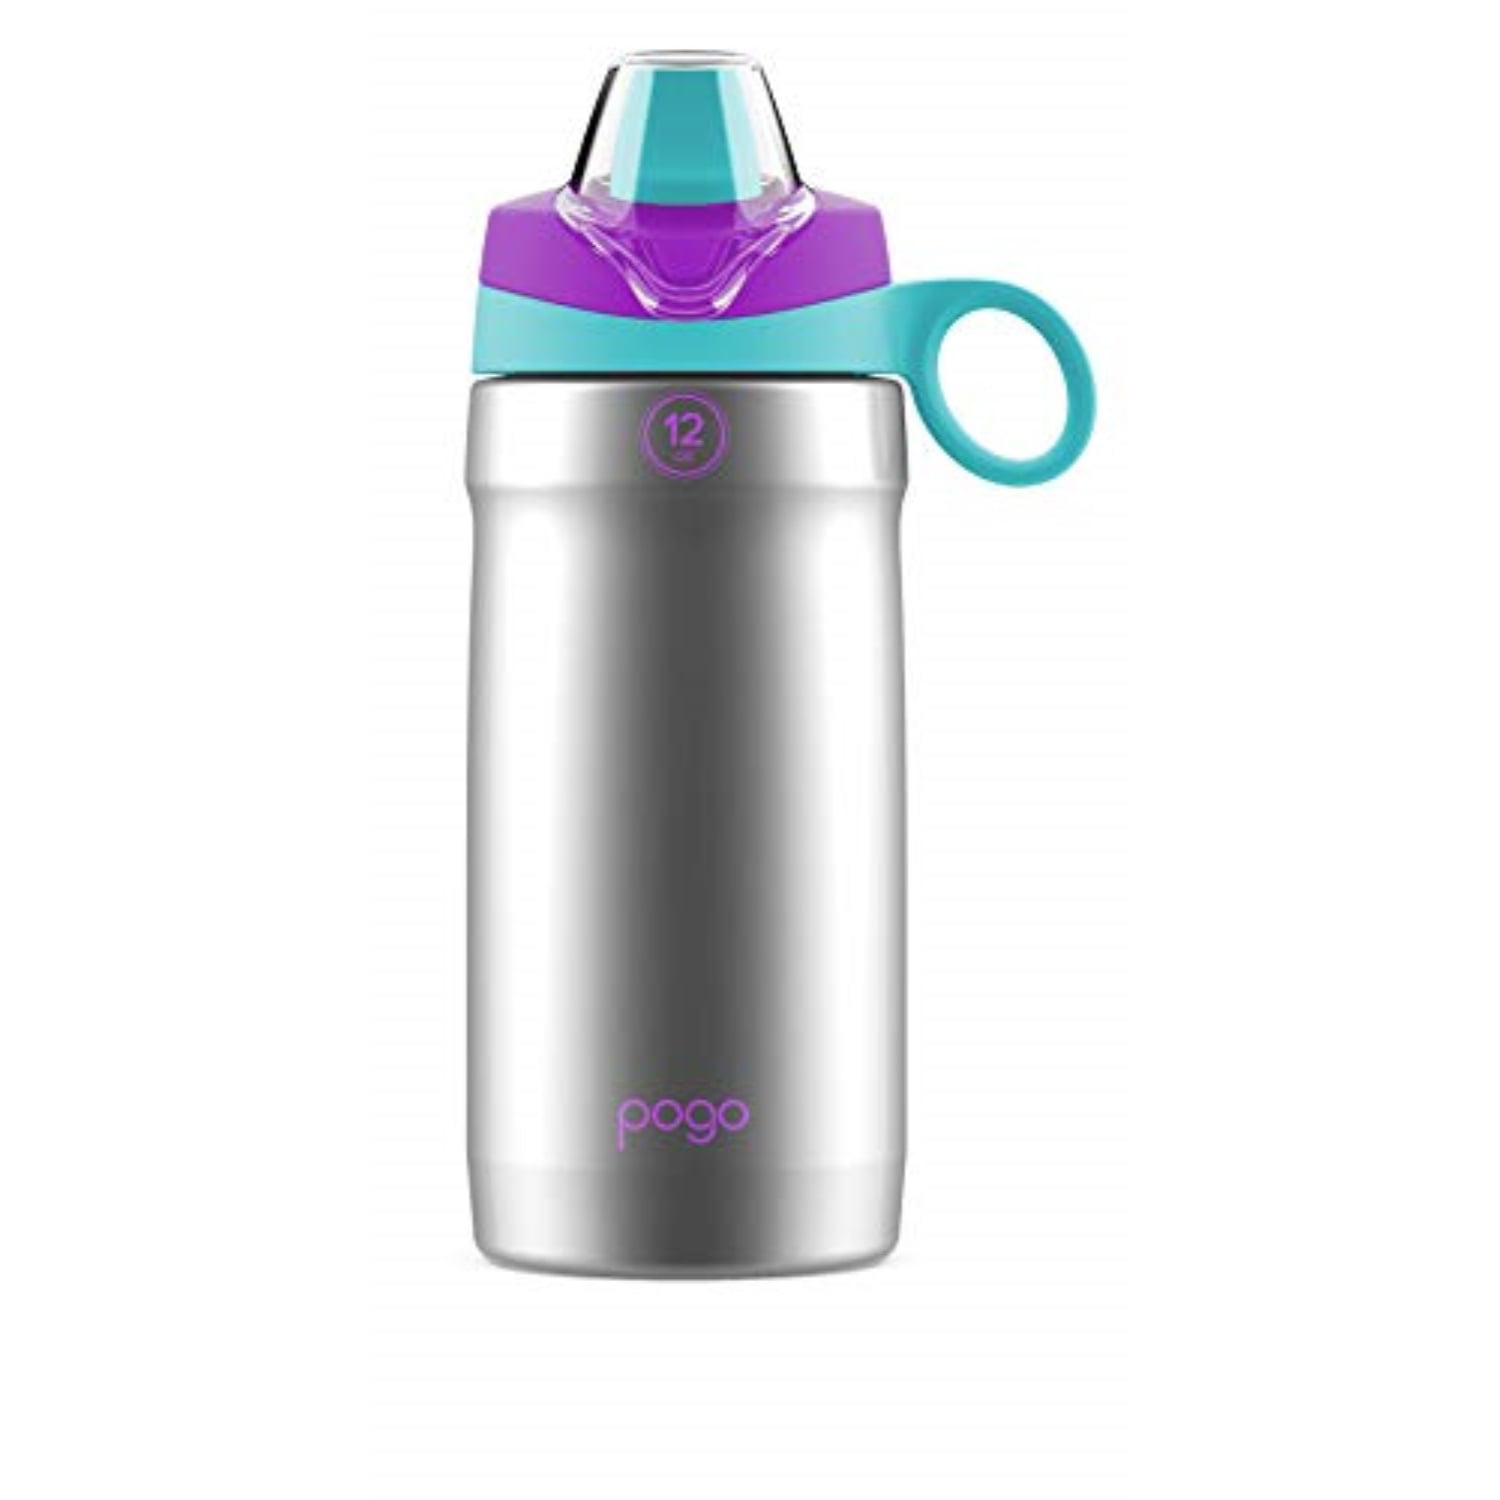 pogo 12oz stainless steel water bottle (mint/purple) - Walmart.com Pogo Stainless Steel Water Bottle